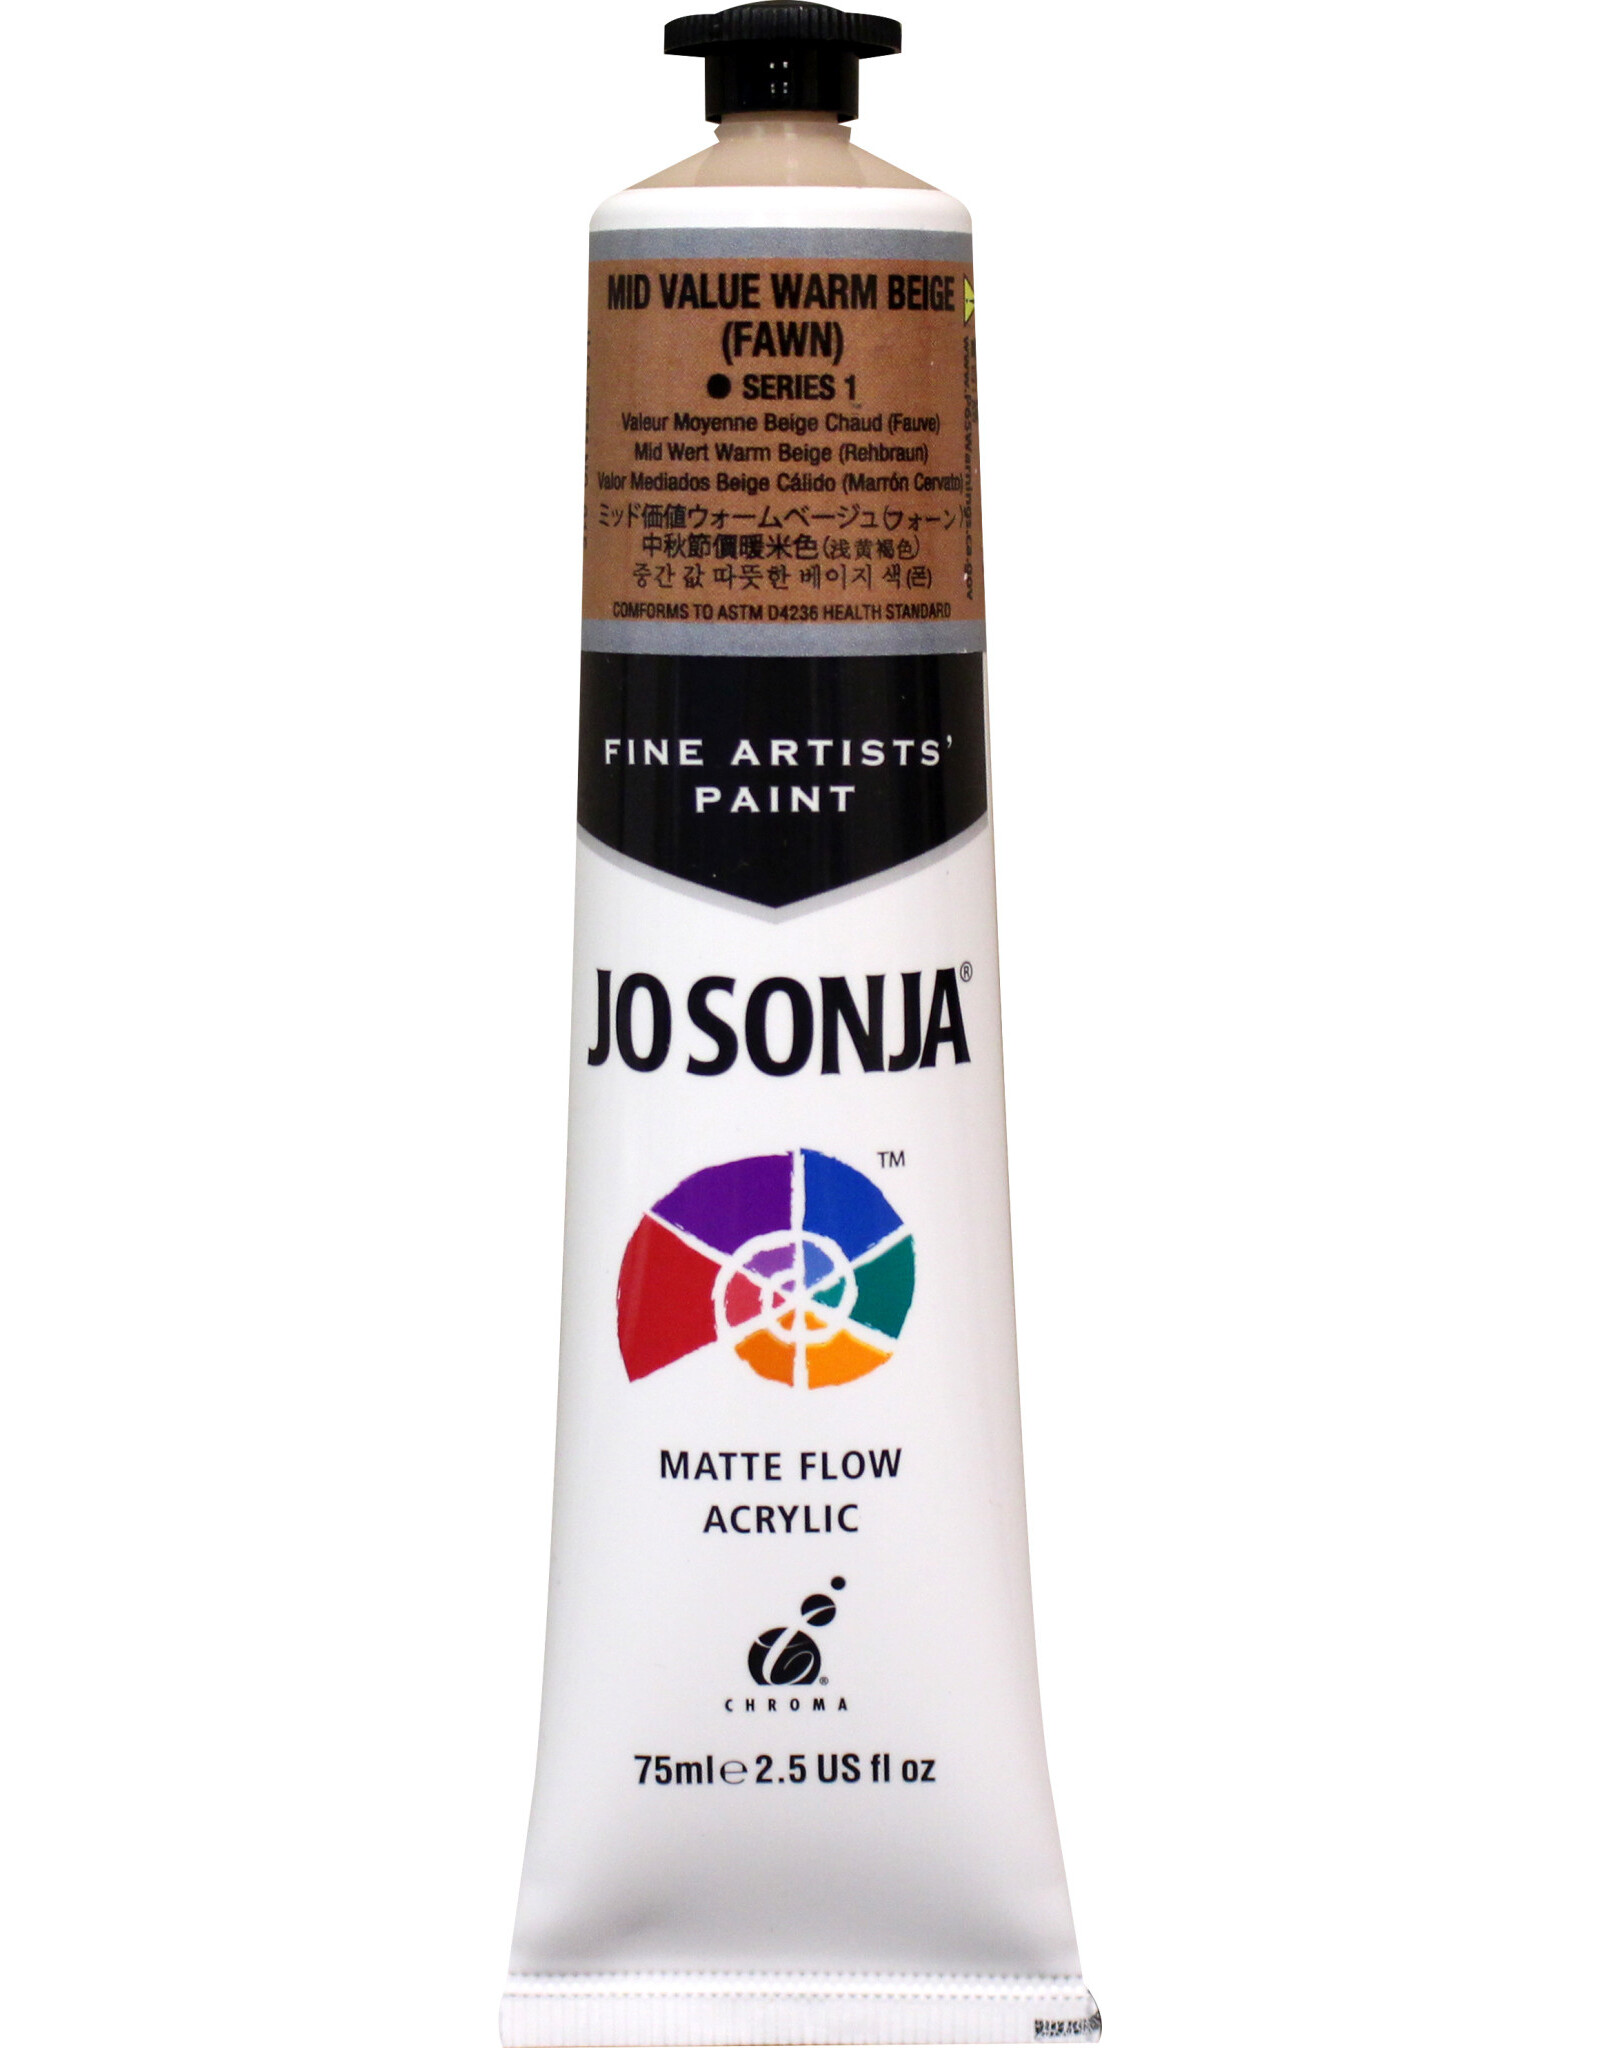 Jo Sonja Jo Sonja Acrylic Paint, Mid Value Warm Beige (Fawn) 2.5oz